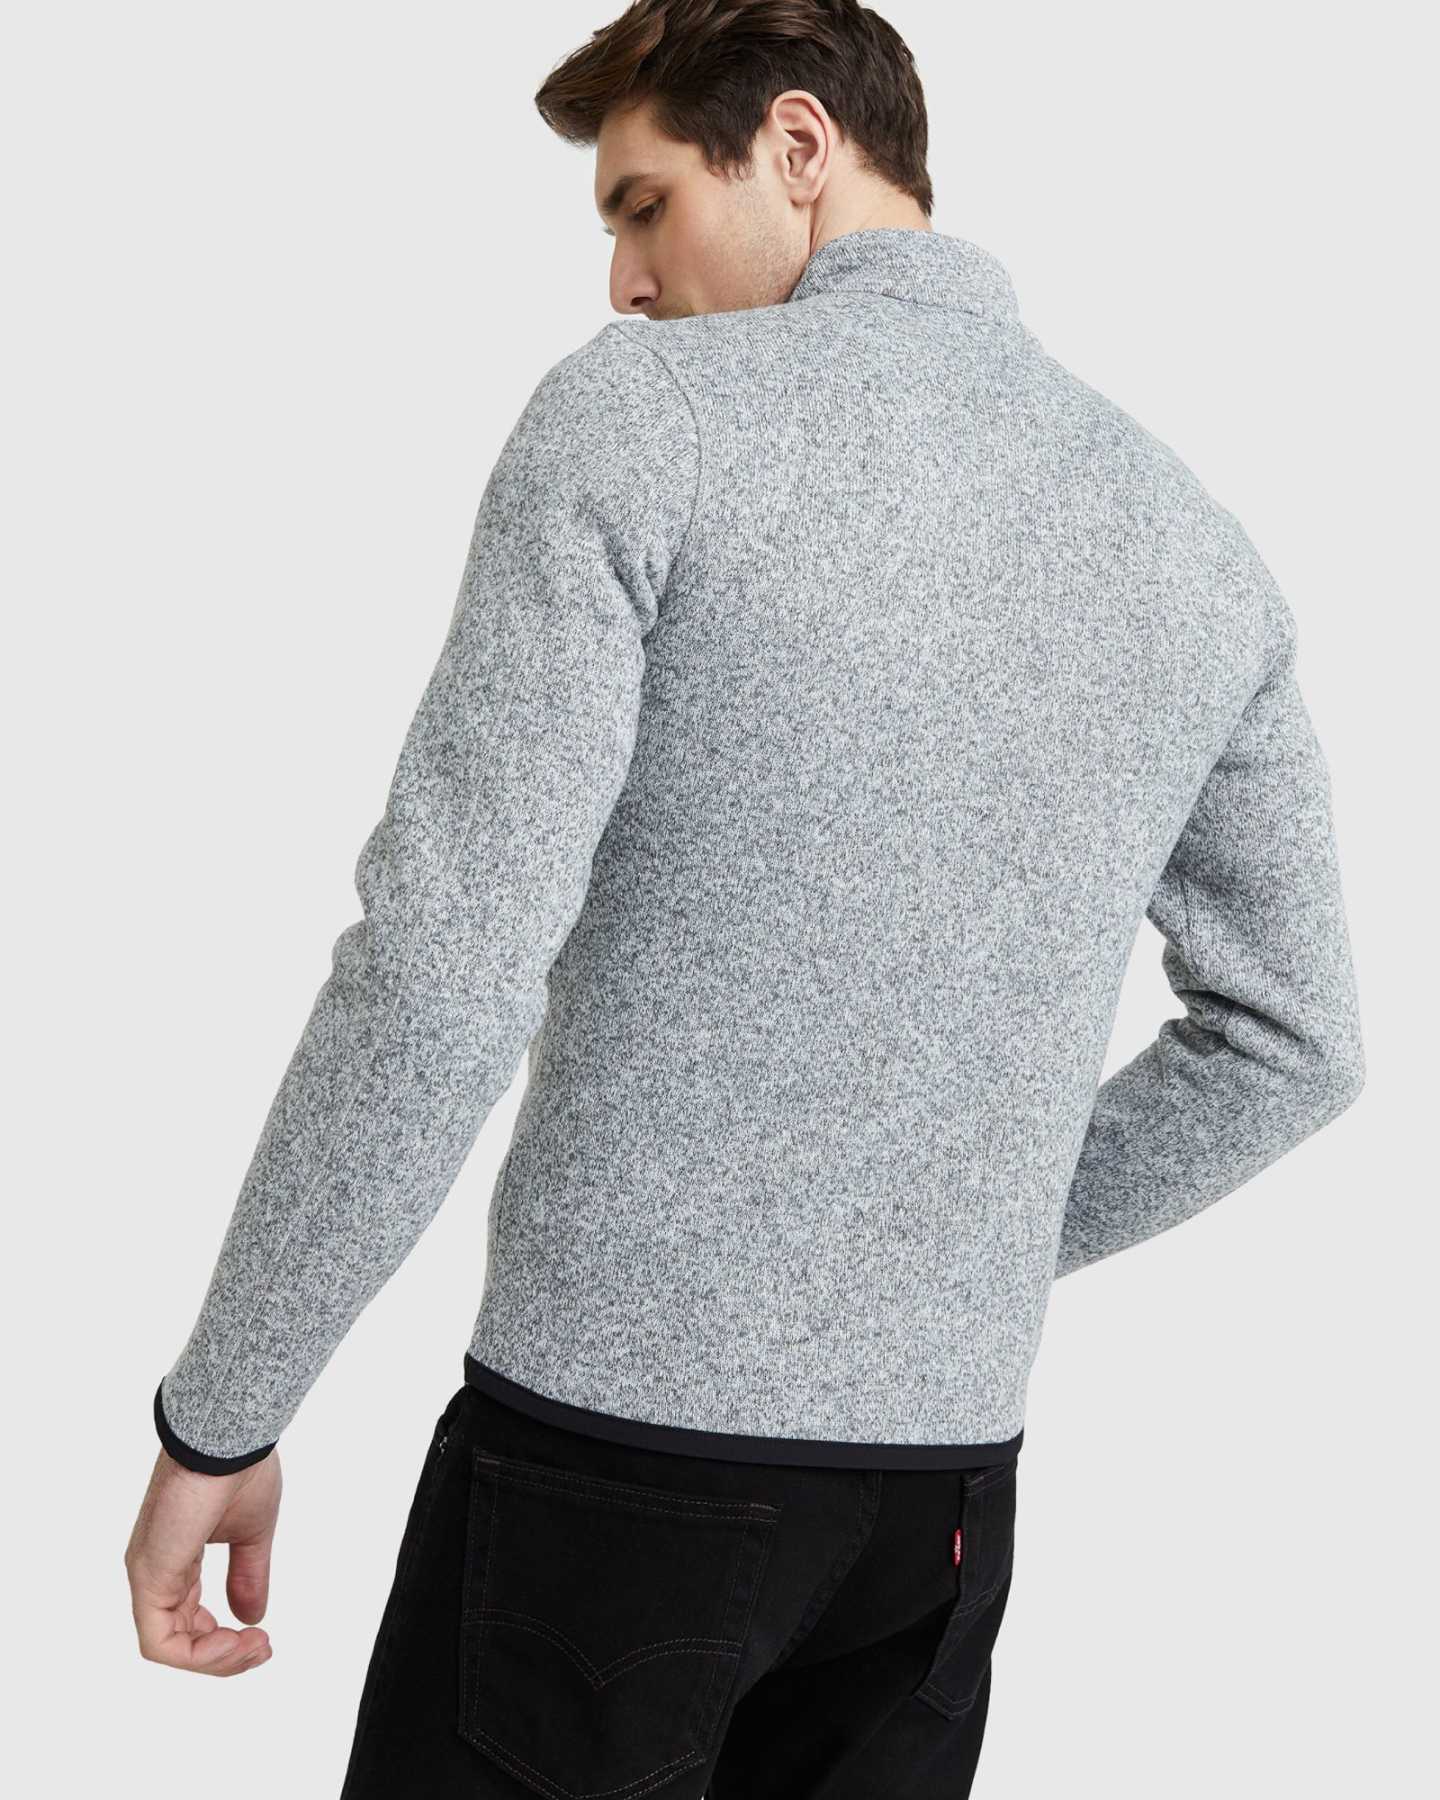 Quarter Zip Sweater Fleece Jacket - 13649835589743